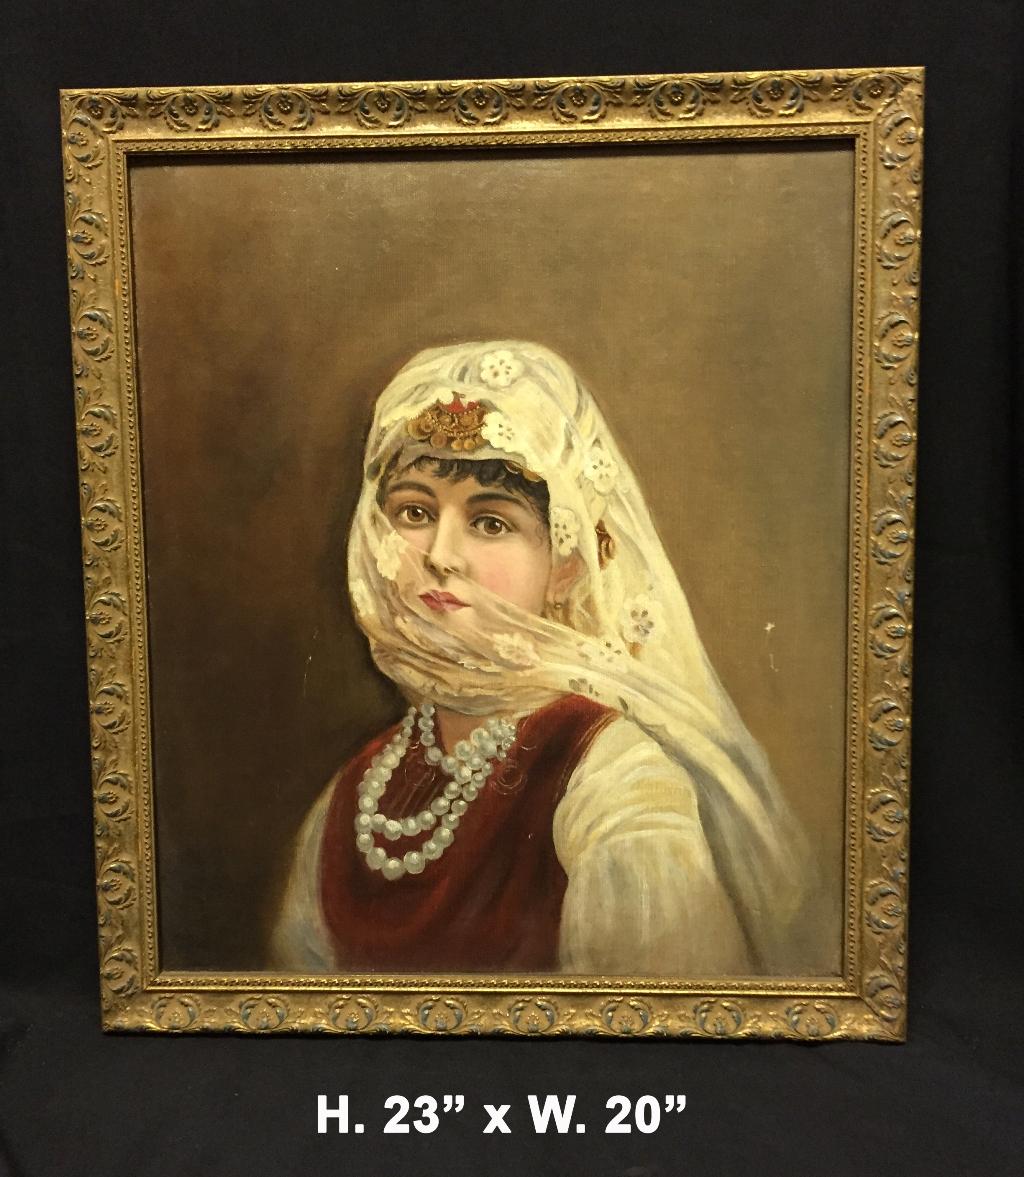 Peinture italienne orientaliste à l'huile sur toile.
20ème siècle. 

Cette belle peinture à l'huile représente une femme orientaliste vêtue de vêtements traditionnels avec un voile et des perles.

Une attention méticuleuse a été accordée à